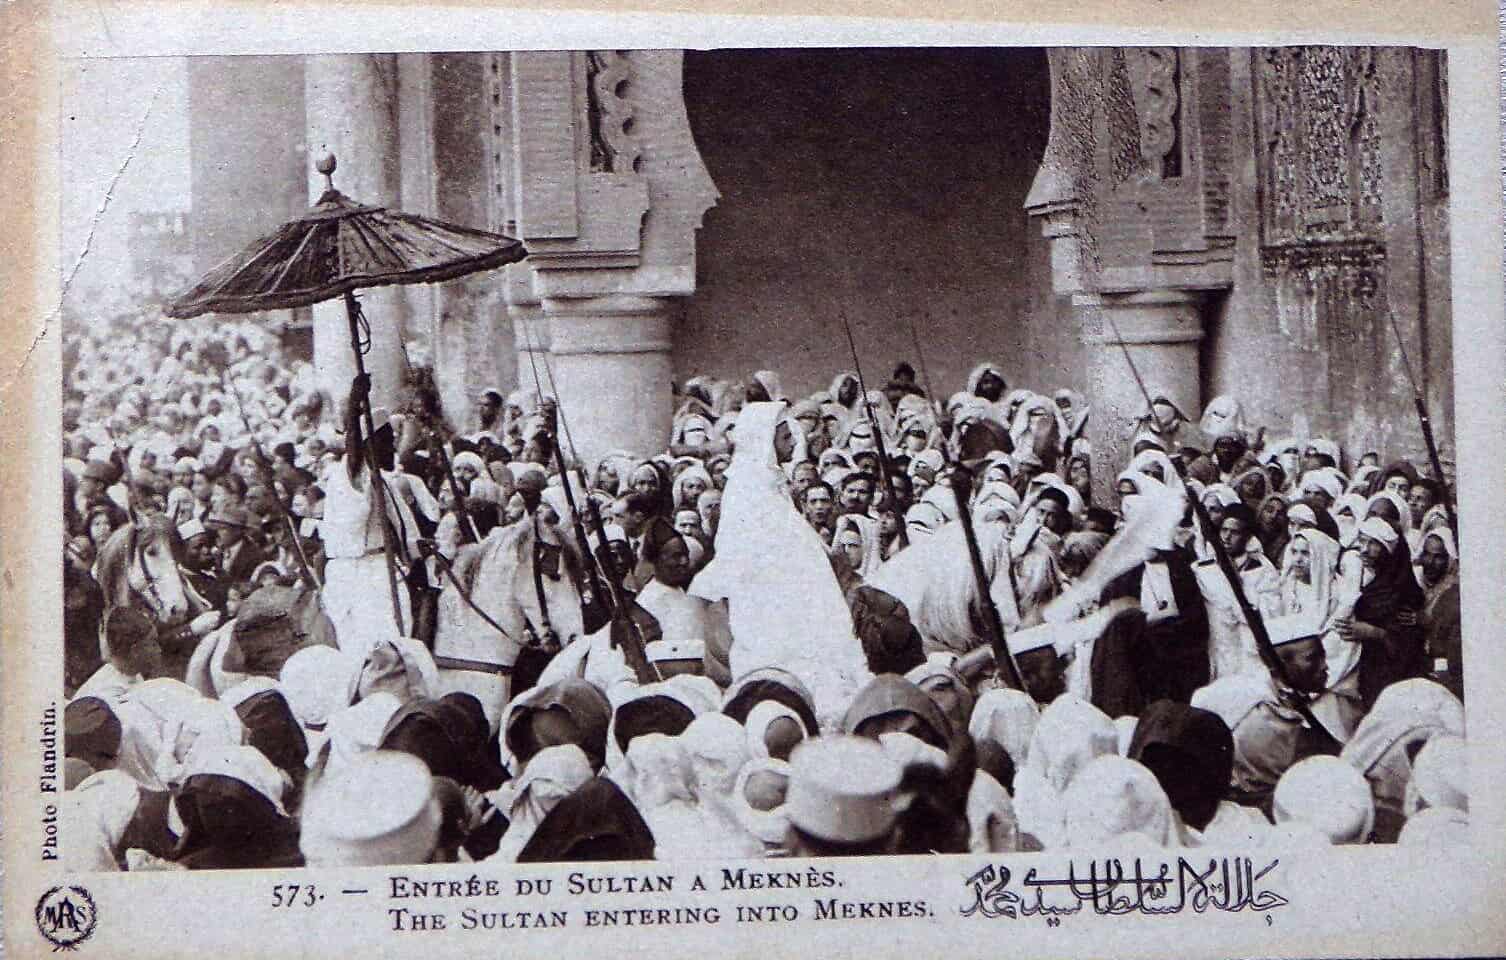 Le Maroc De 1912 à 1956 Les dates-clés du protectorat du Maroc : de 1912 à 1927 du traité de